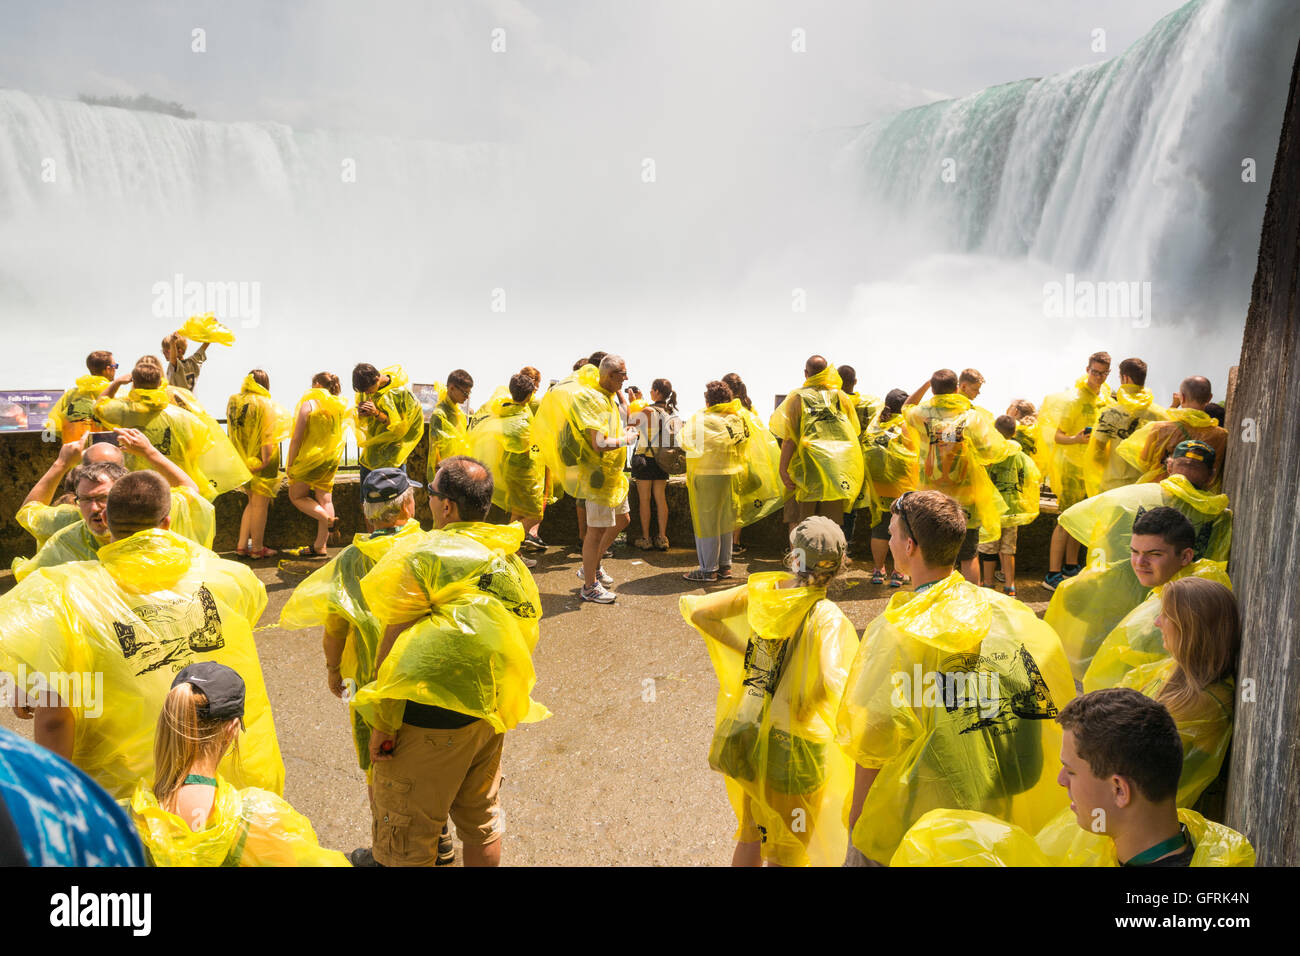 Niagara Falls, Canada - les touristes sur la terrasse d'observation inférieure au pied des chutes les insignes distinctifs de ponchos jaunes Banque D'Images